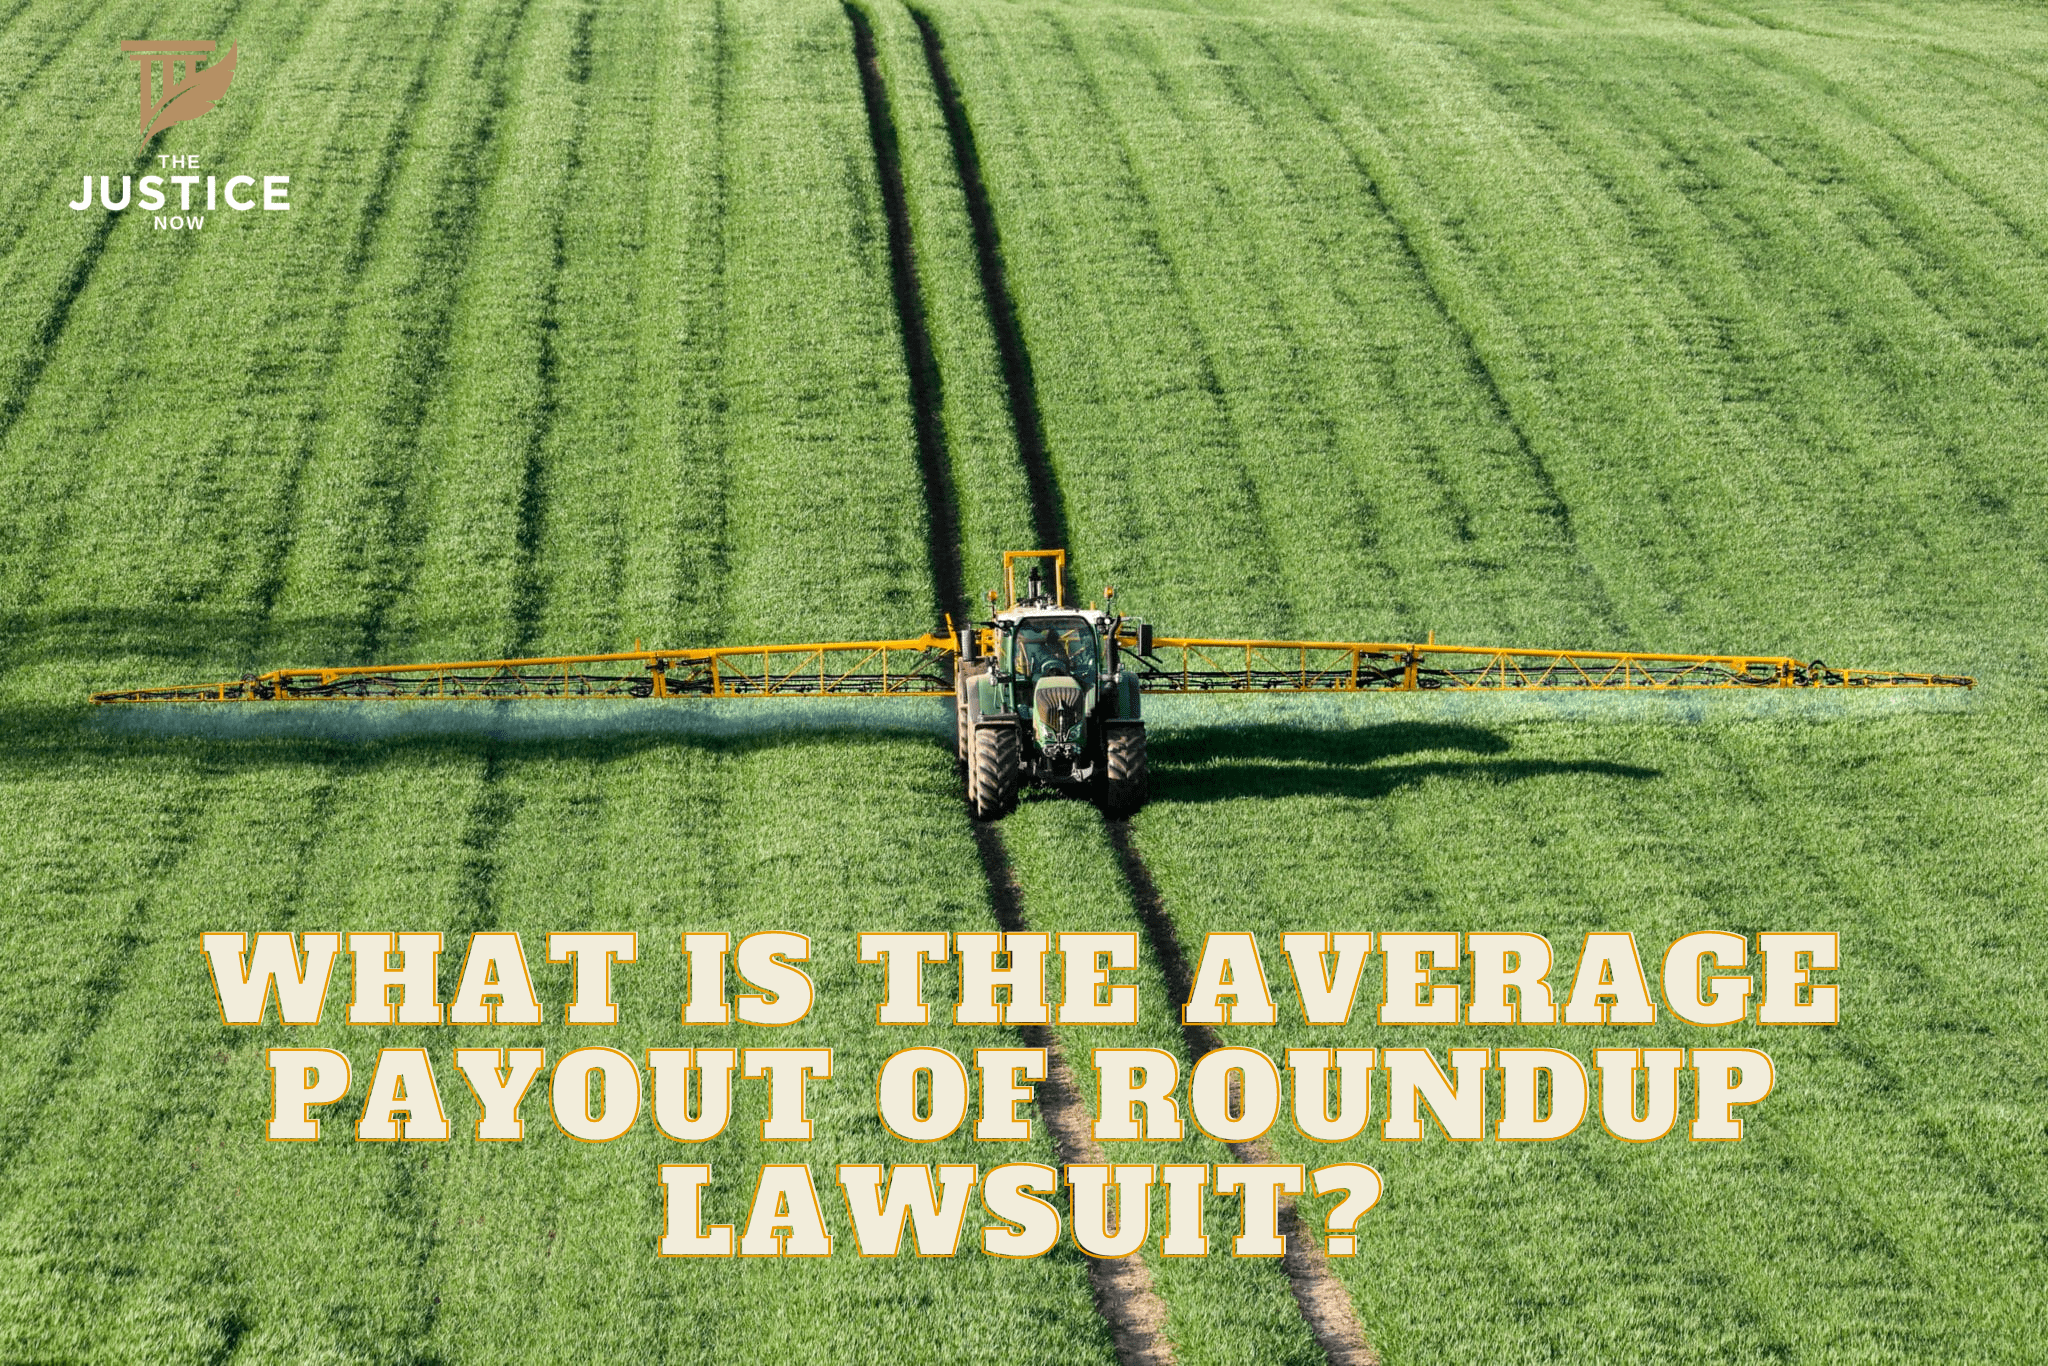 Roundup Lawsuit Average Payout